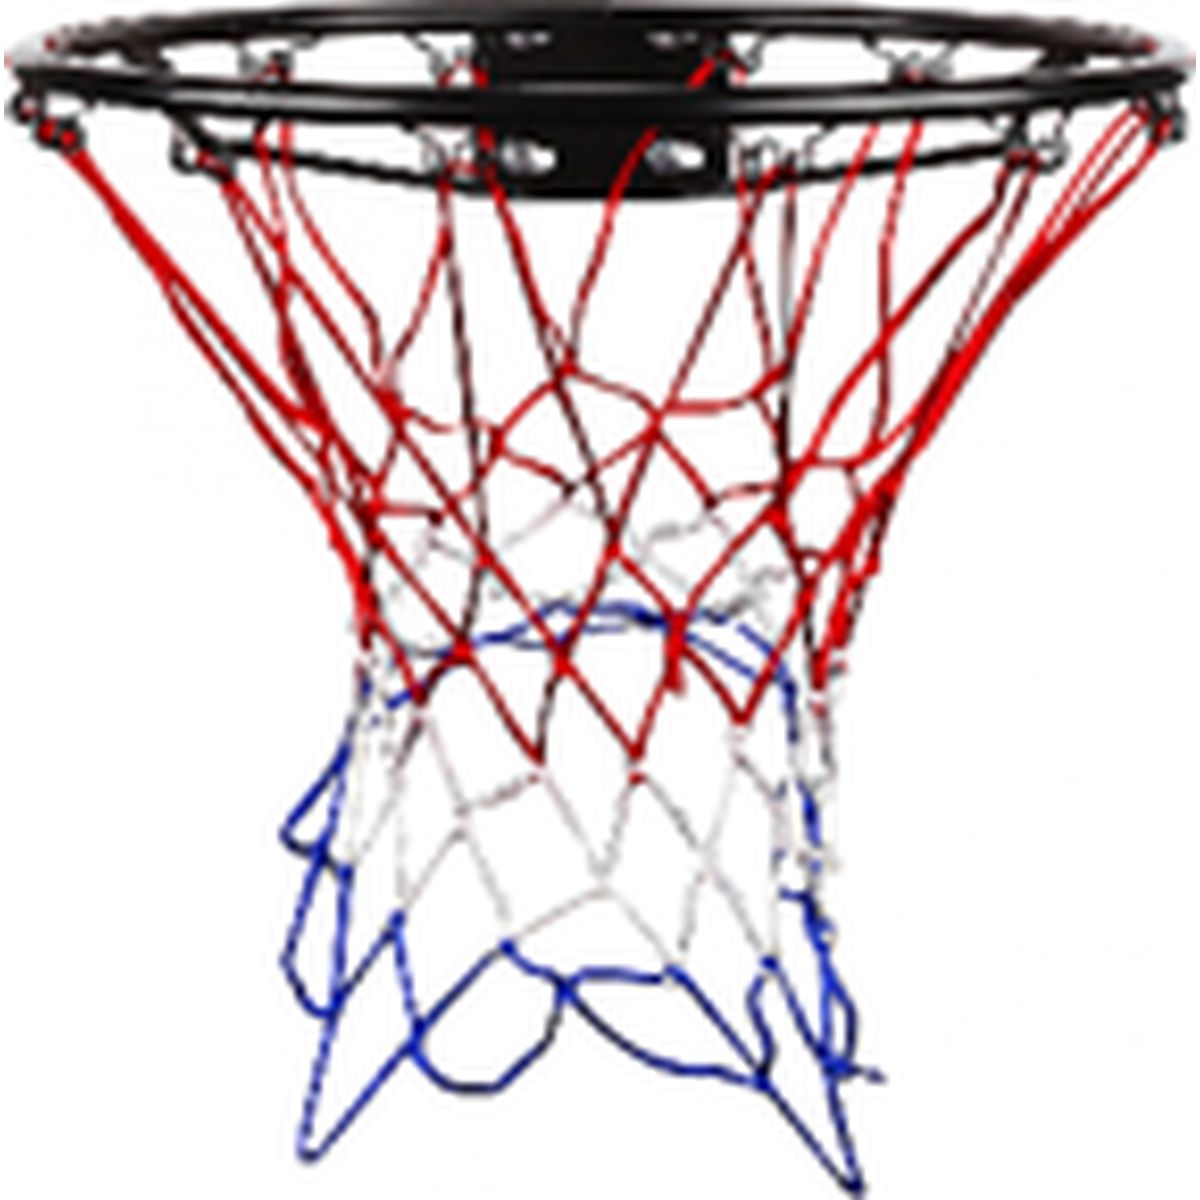 V3Tec Basketballkorb mit Netz Unisex